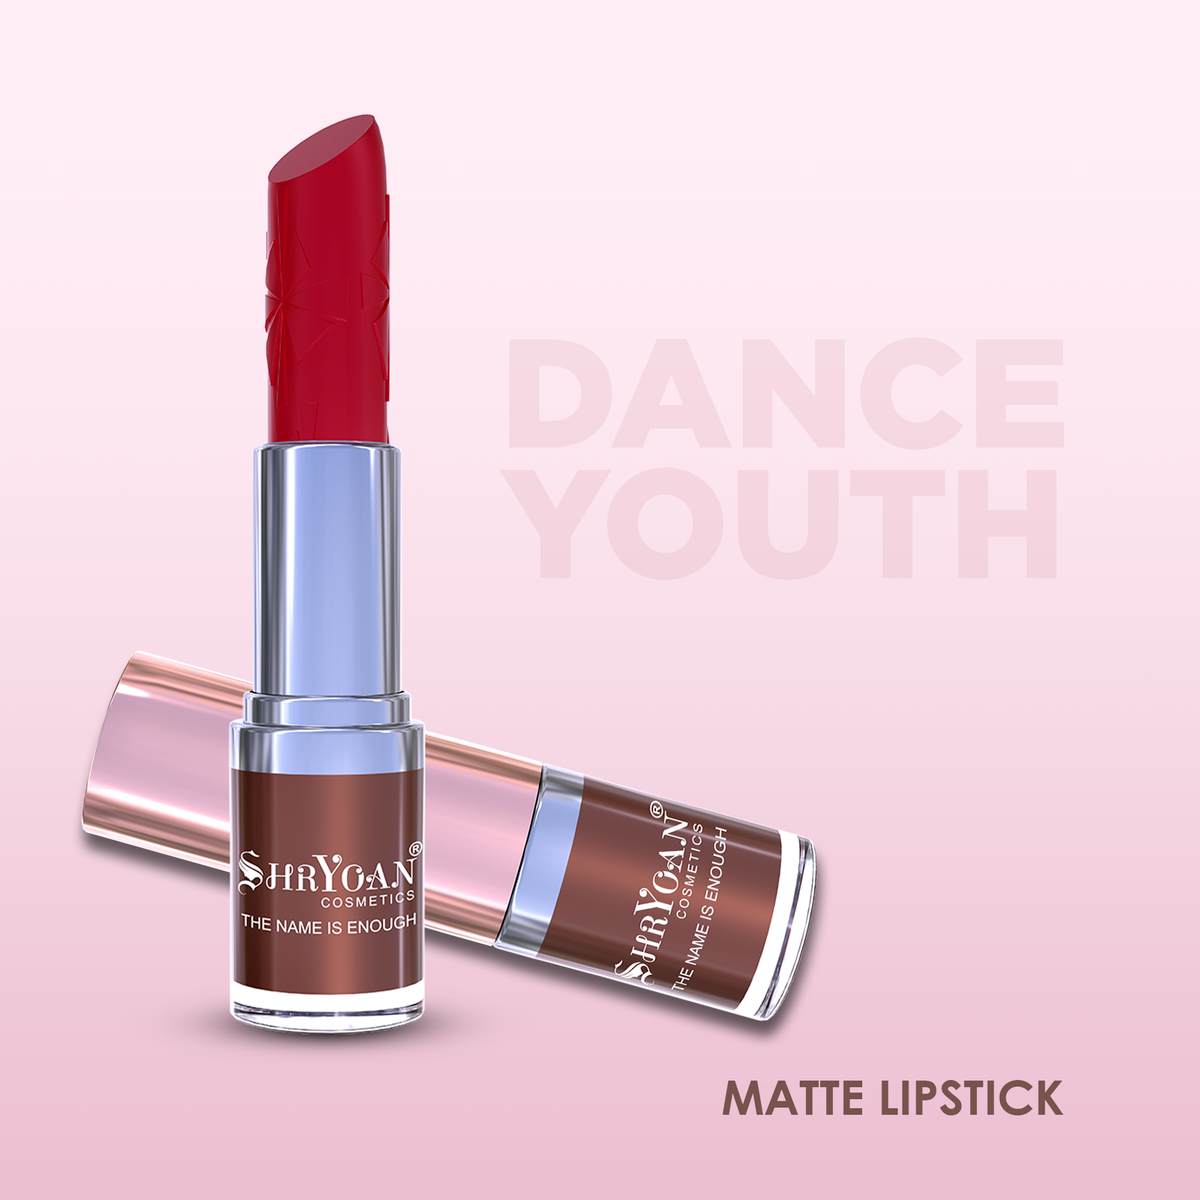 Youth Volumizing Lipstick